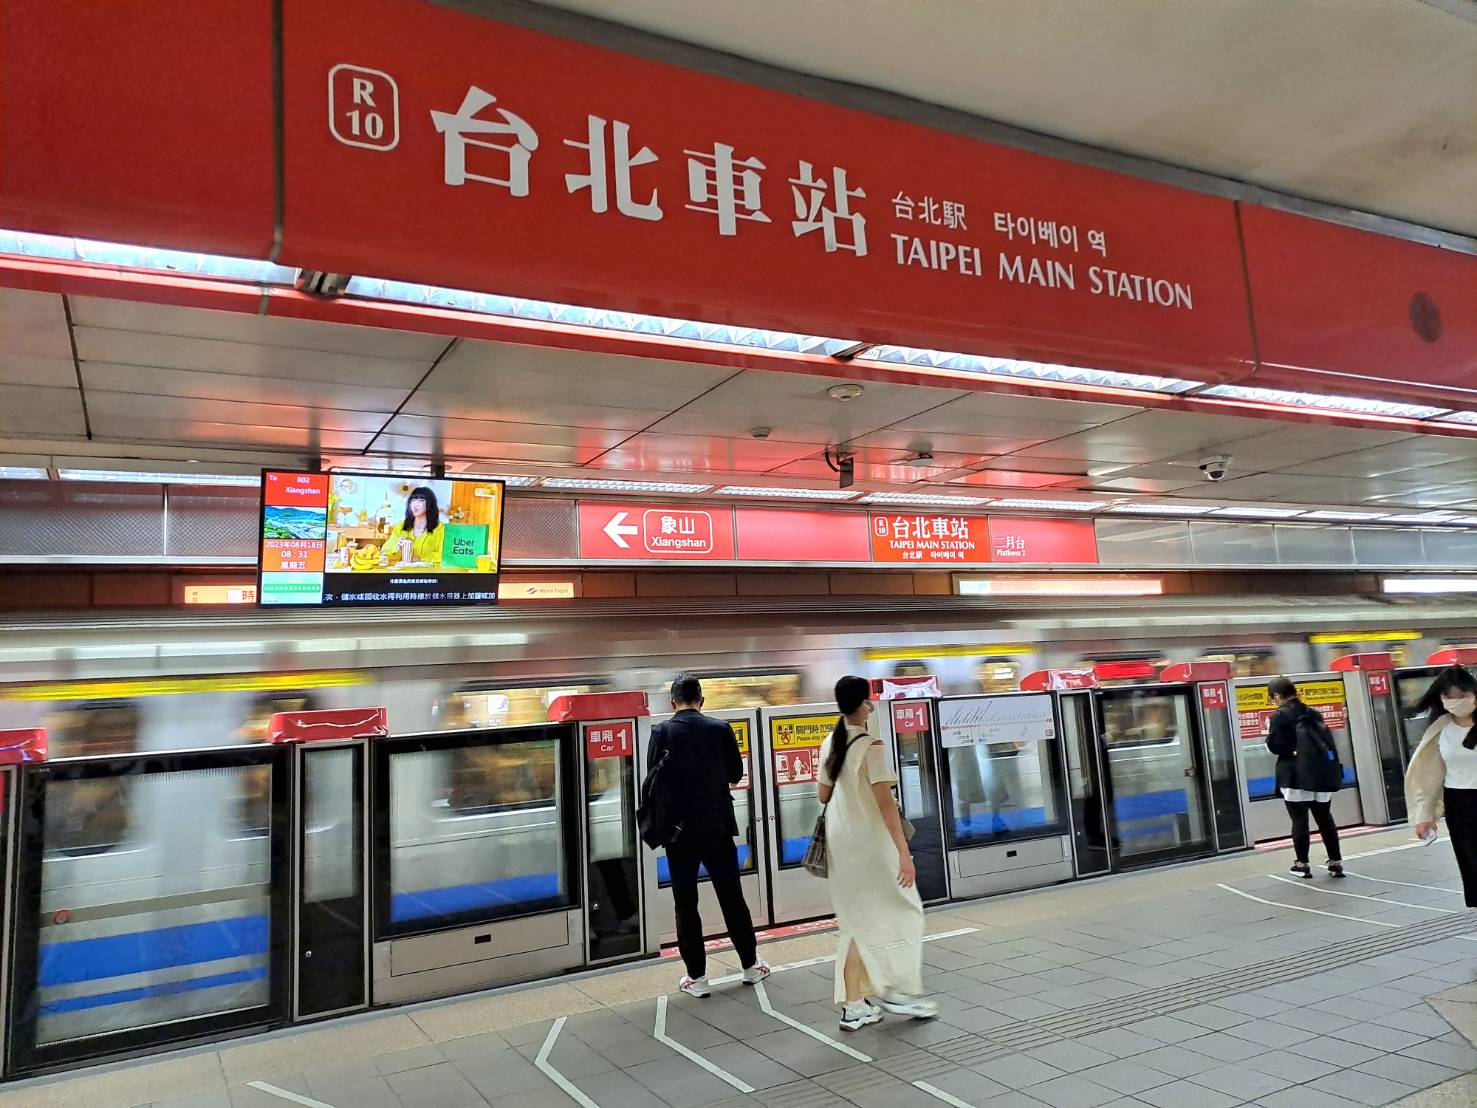 友善國際旅客 台北捷運站新增日韓語站名到站廣播與指標 